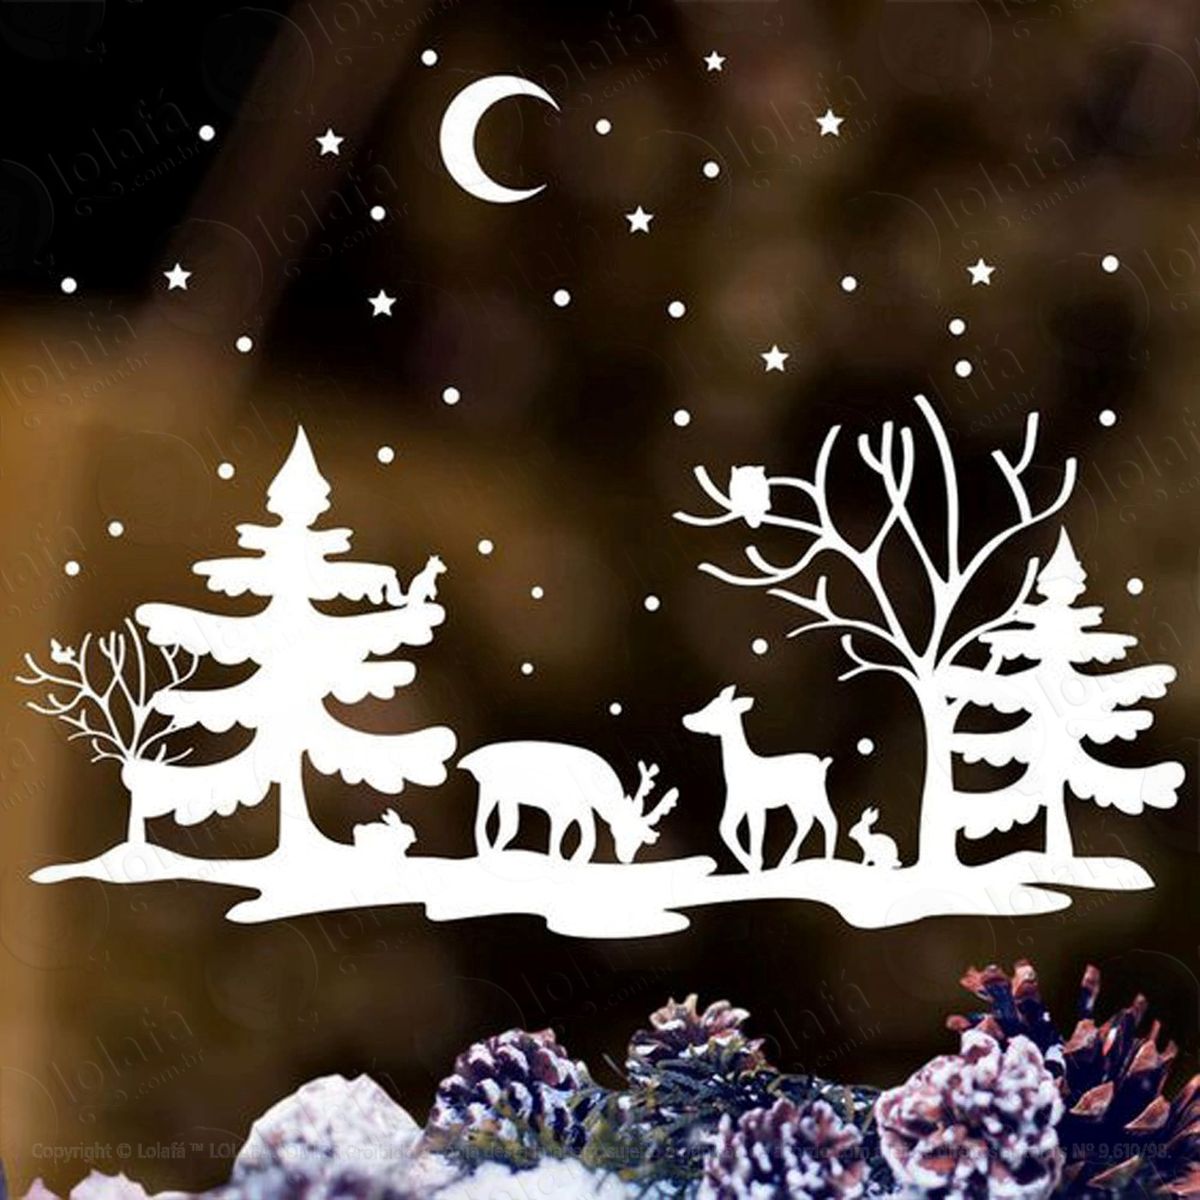 floresta neve adesivo de natal para vitrine, parede, porta de vidro - decoração natalina mod:290